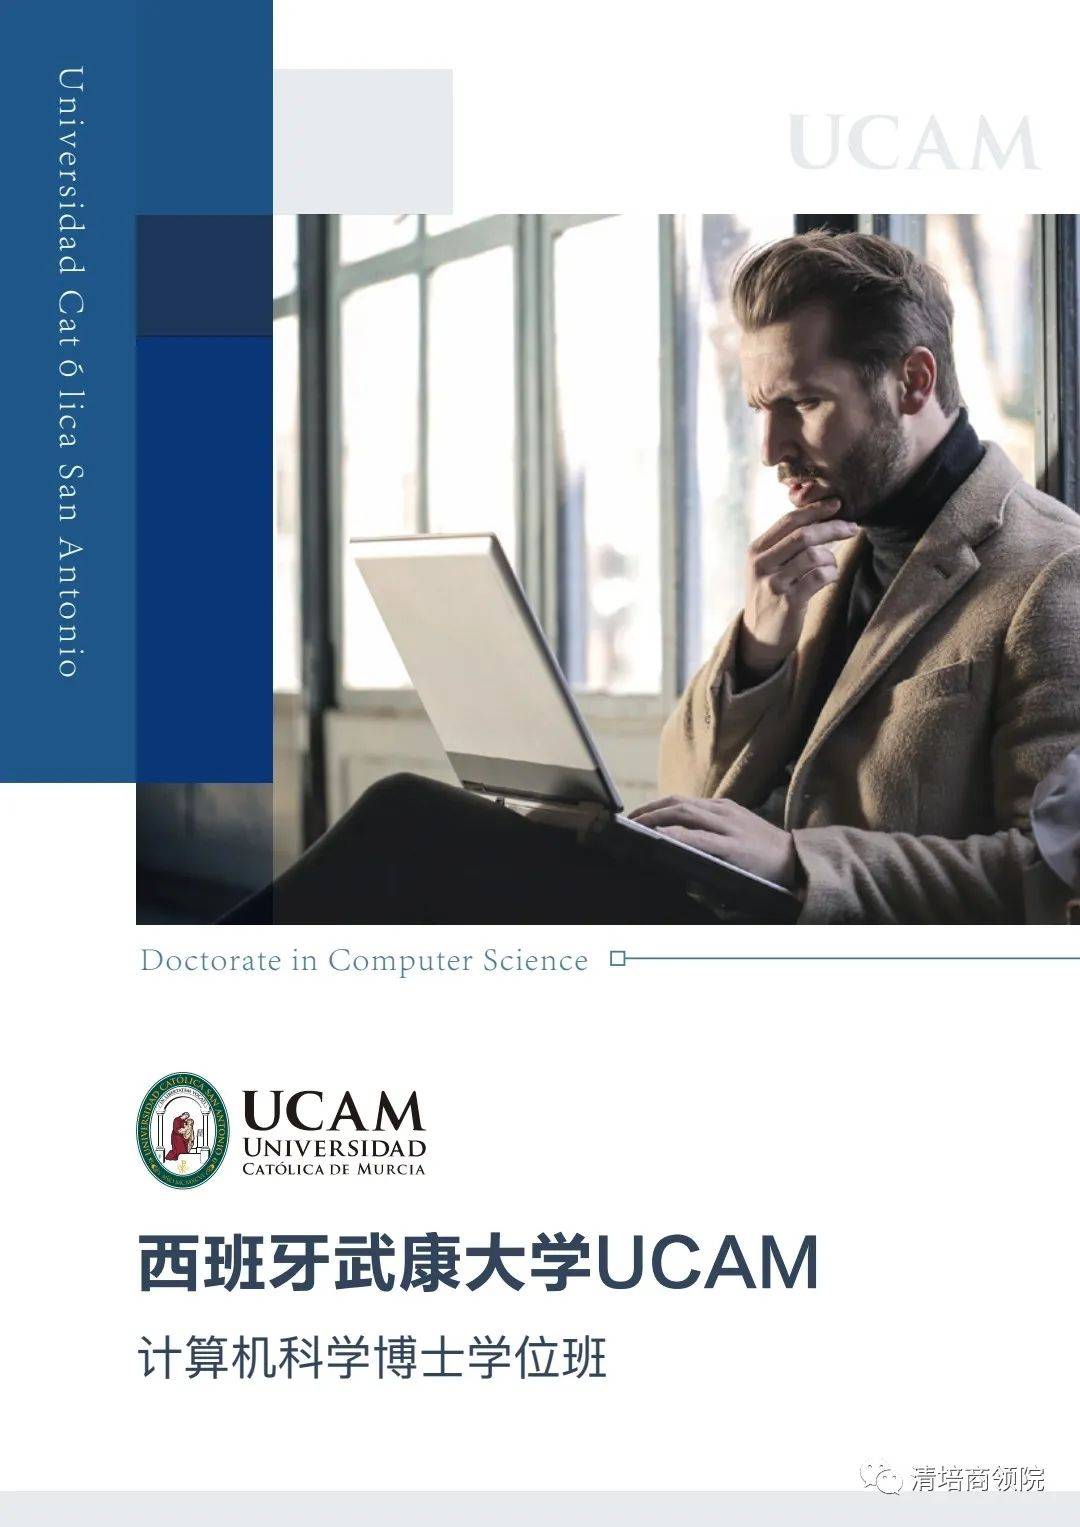 西班牙武康大学UCAM计算机科学博士学位班项目介绍